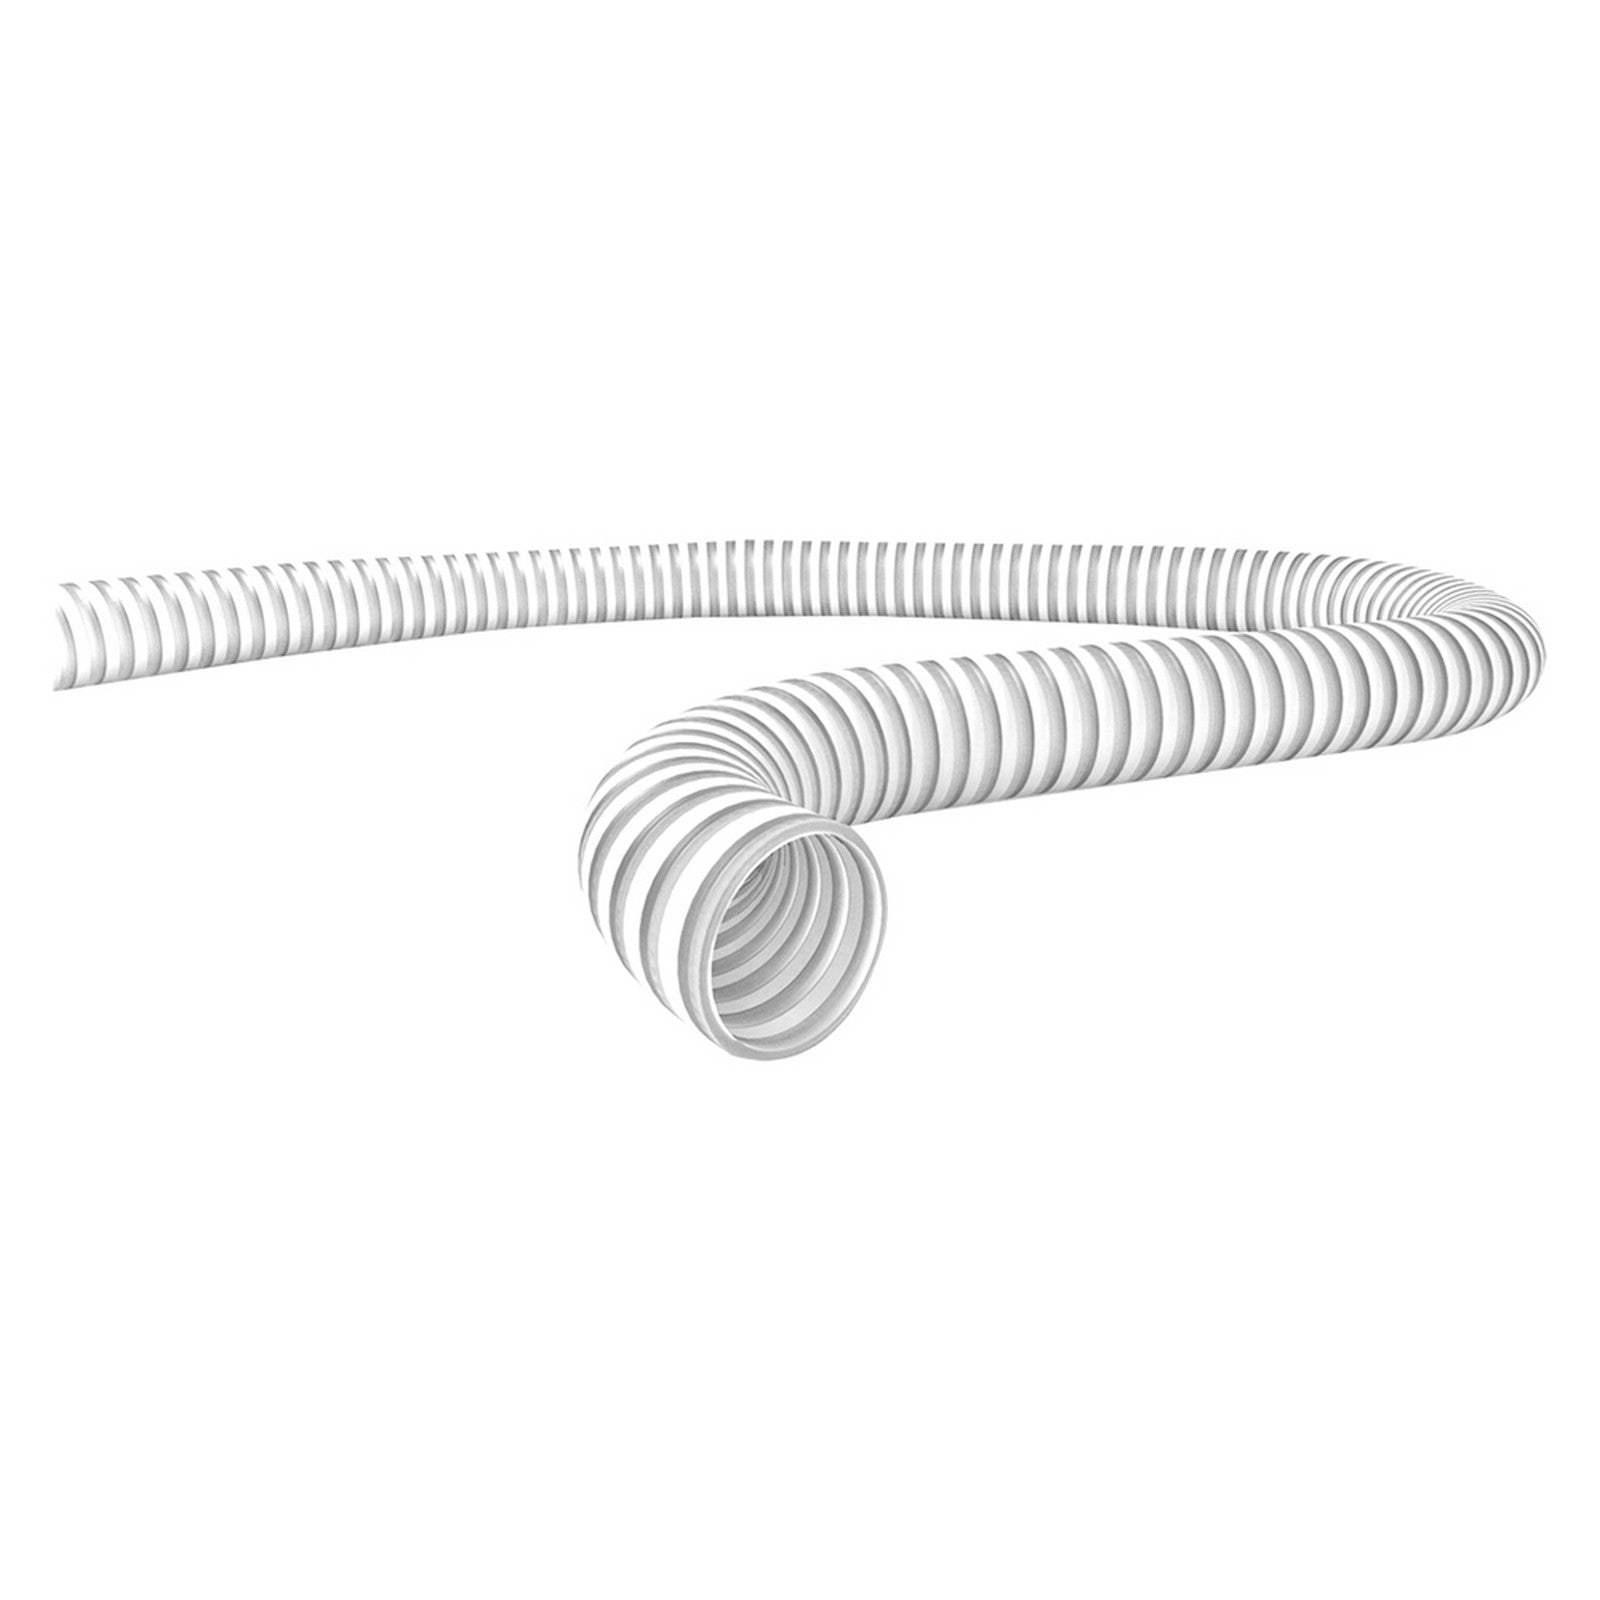 25mt tubo spiralato atossico Ã¸ mm. 30 x mt. 25 - Ã¸esterno 35 cod:ferx.6080614nlm